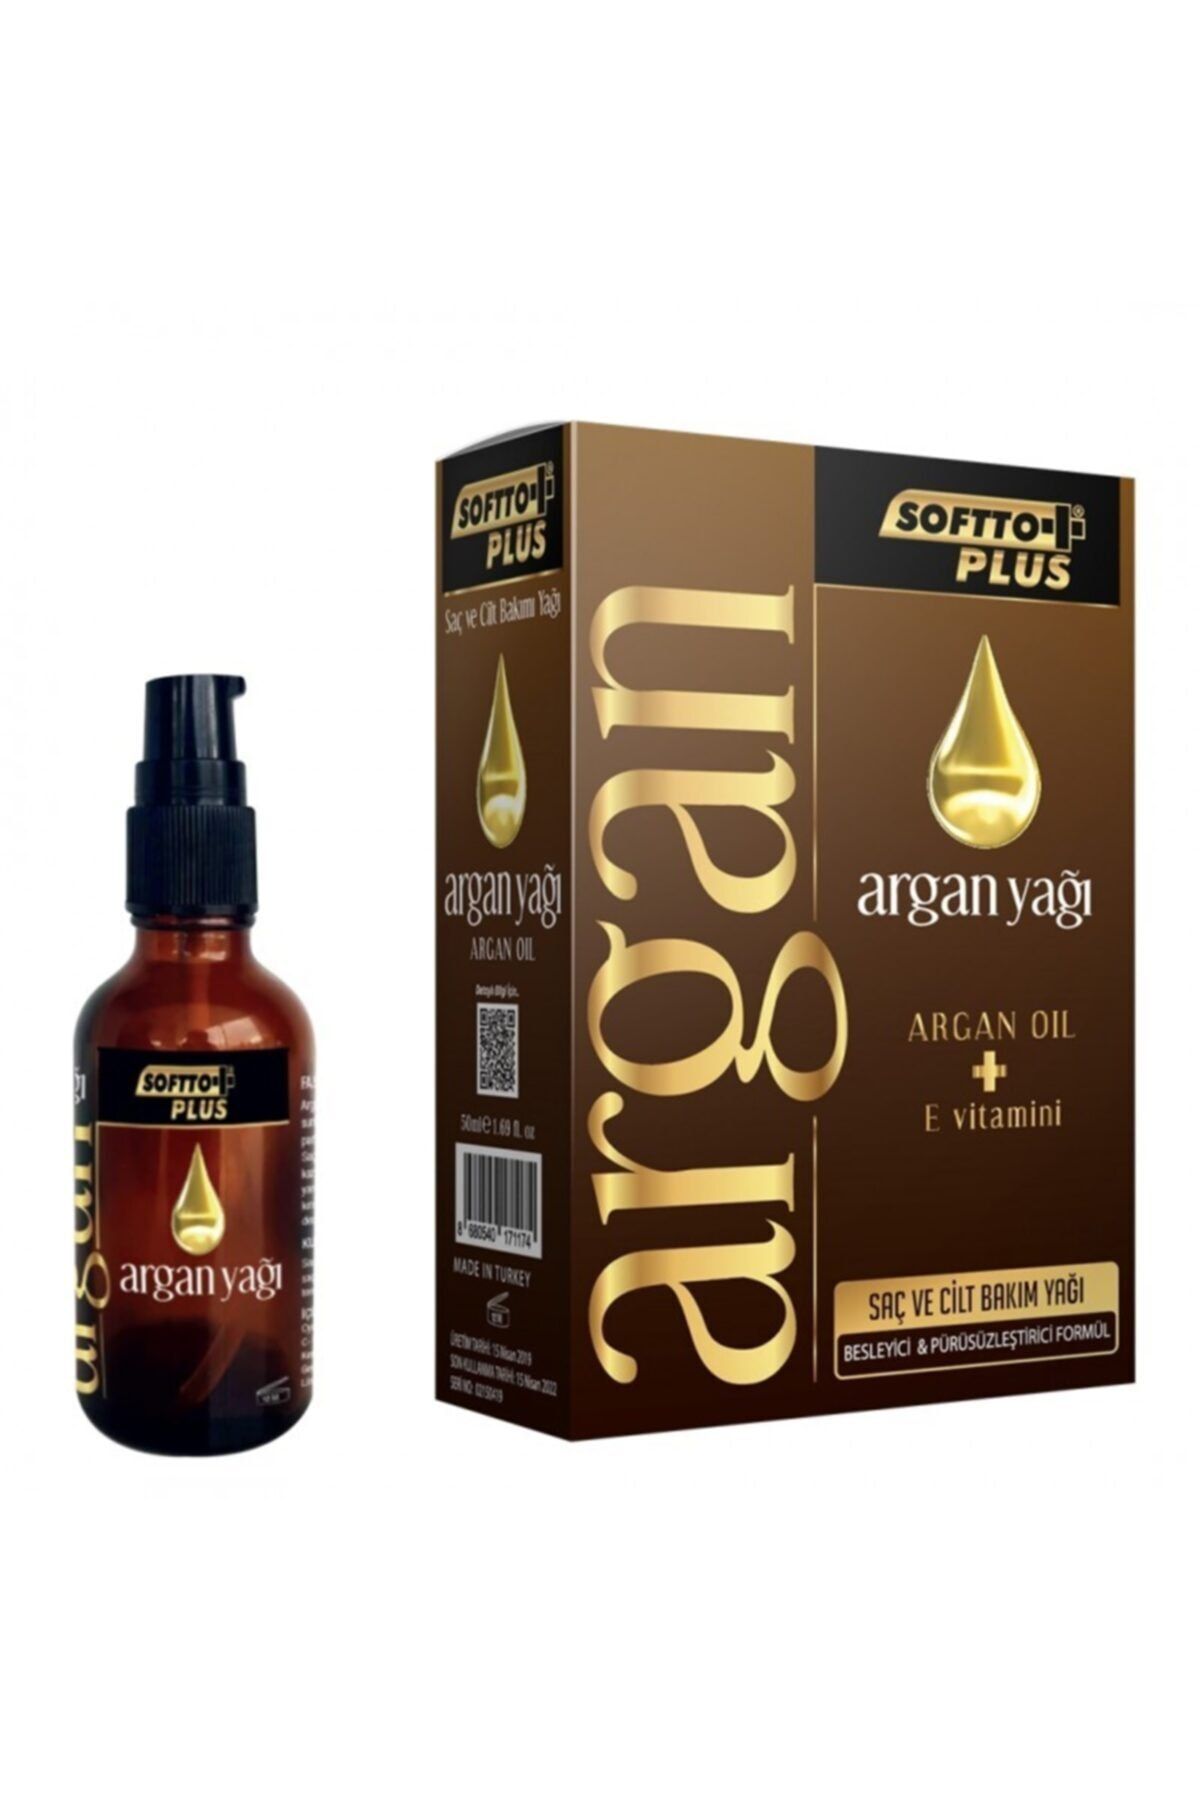 Softto Plus Argan Yağı Saç Ve Cilt Bakımı Bitkisel Yağ 50 ml